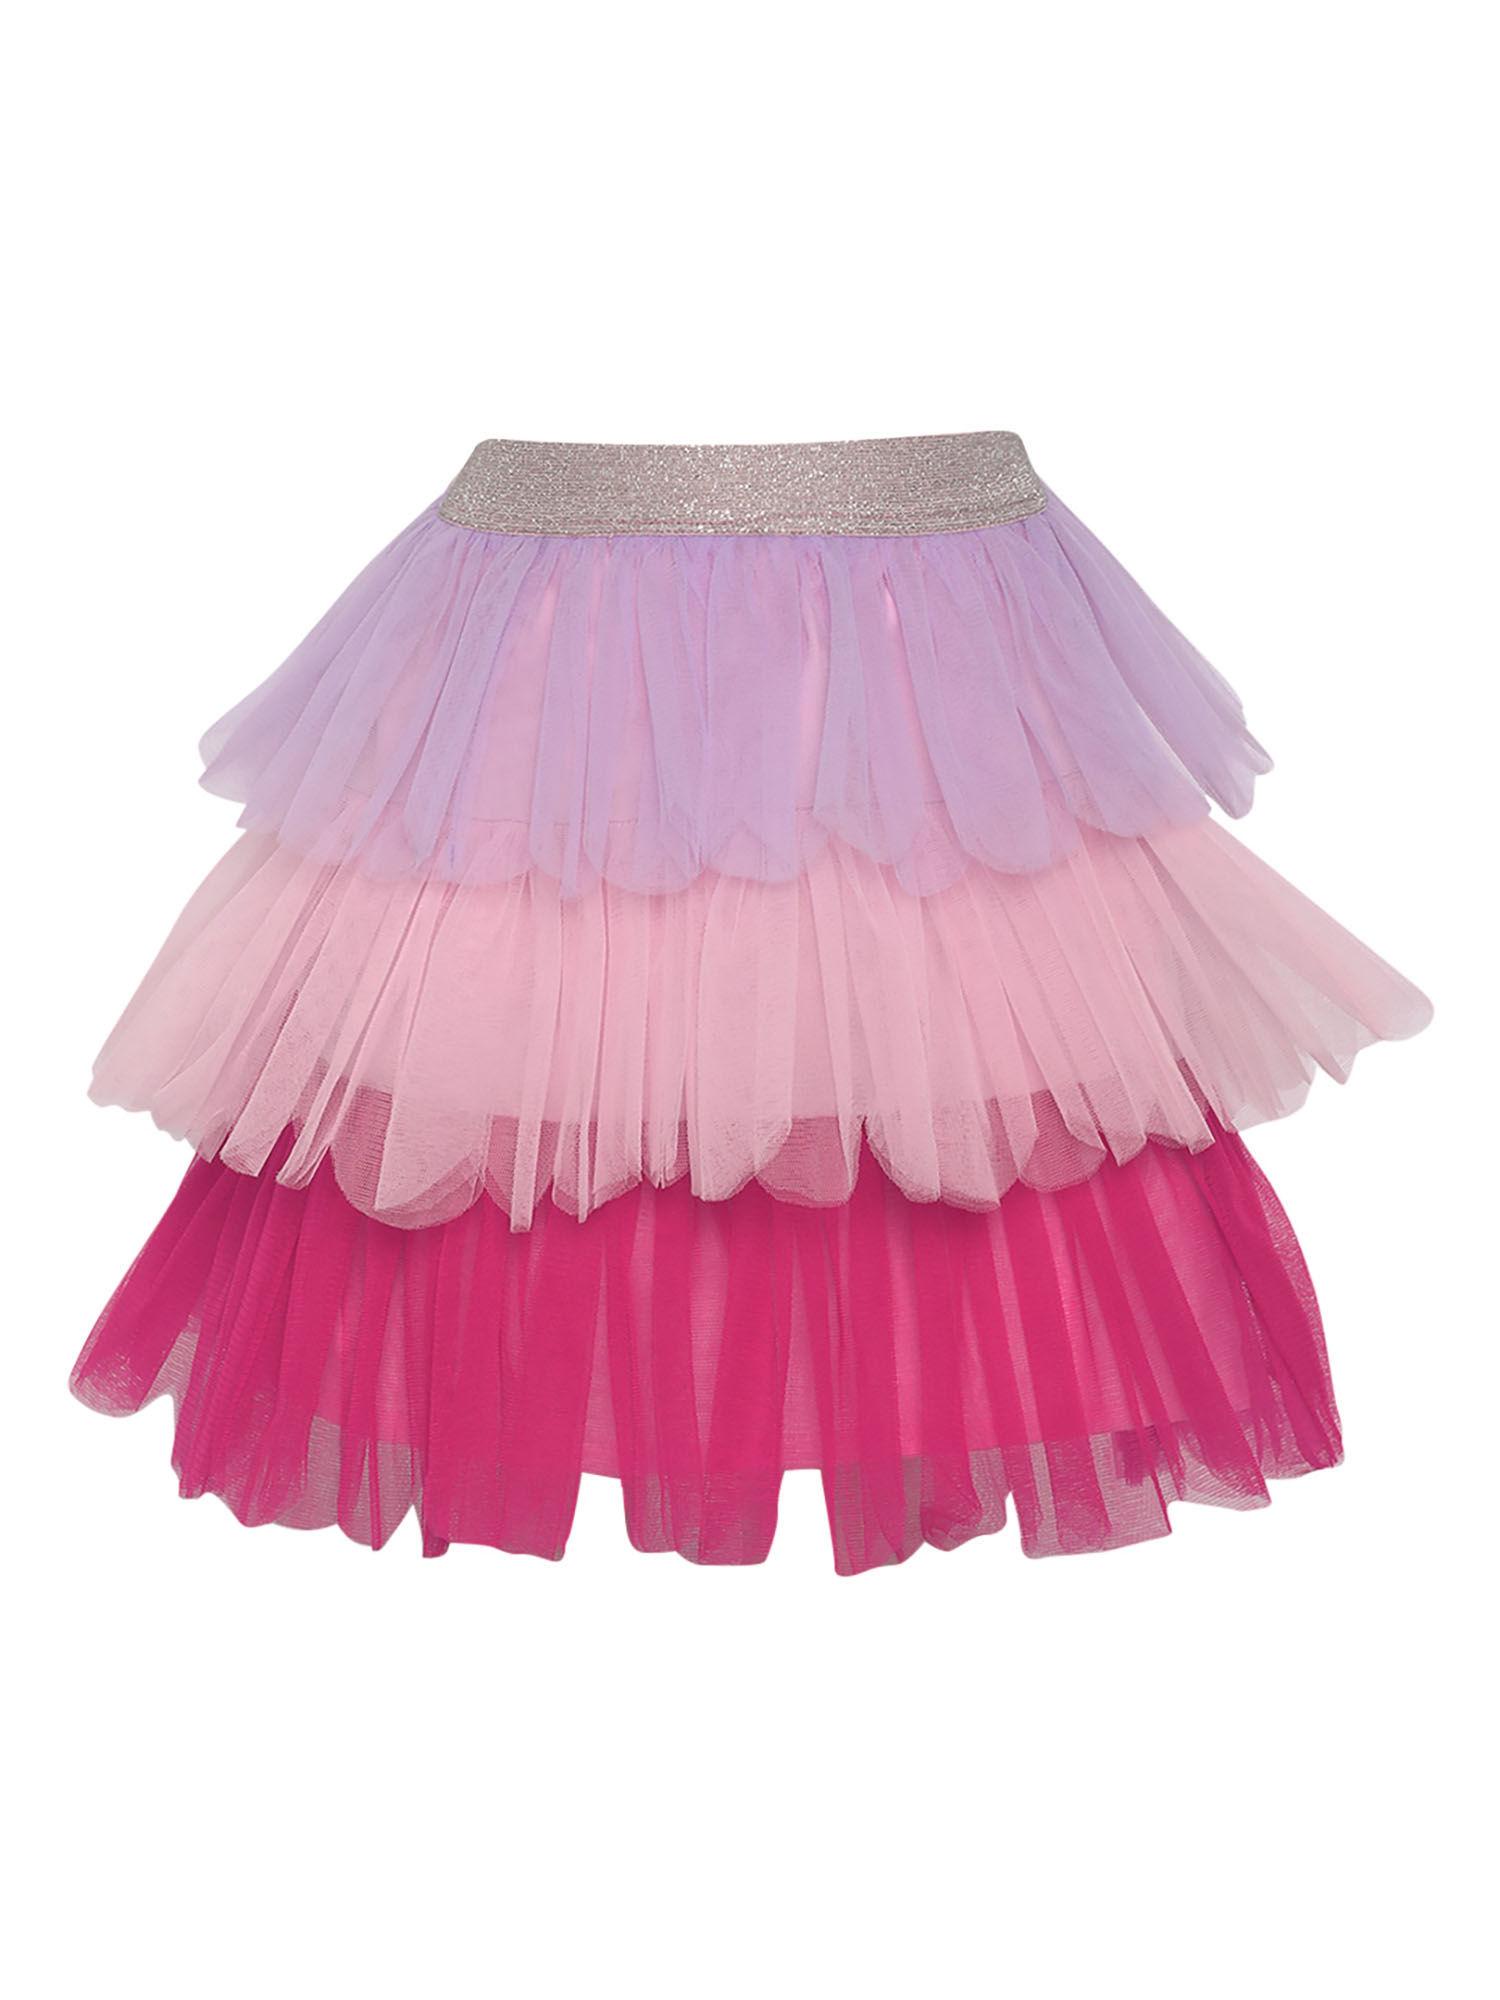 multi-color tier tutu skirt